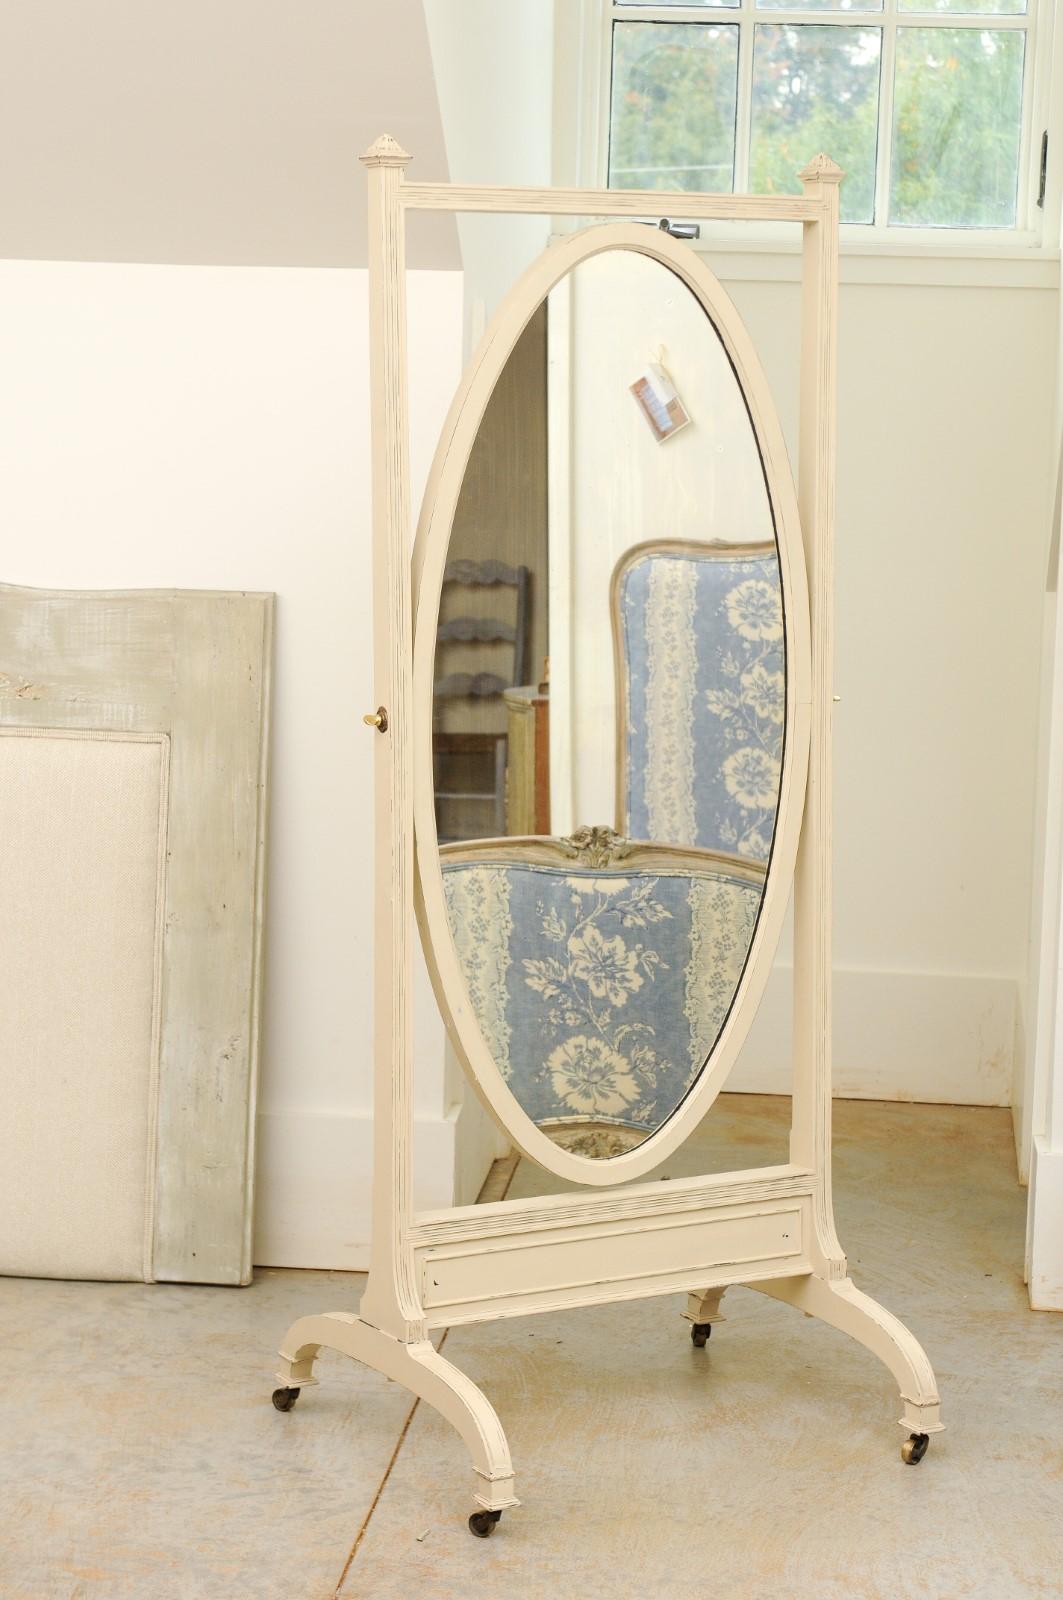 Miroir chevalier en bois peint anglais du 19ème siècle, avec plaque de miroir ovale, base incurvée et roulettes. Né en Angleterre au XIXe siècle, ce joli miroir chevalier présente une plaque ovale entourée d'un cadre linéaire. Le miroir basculant